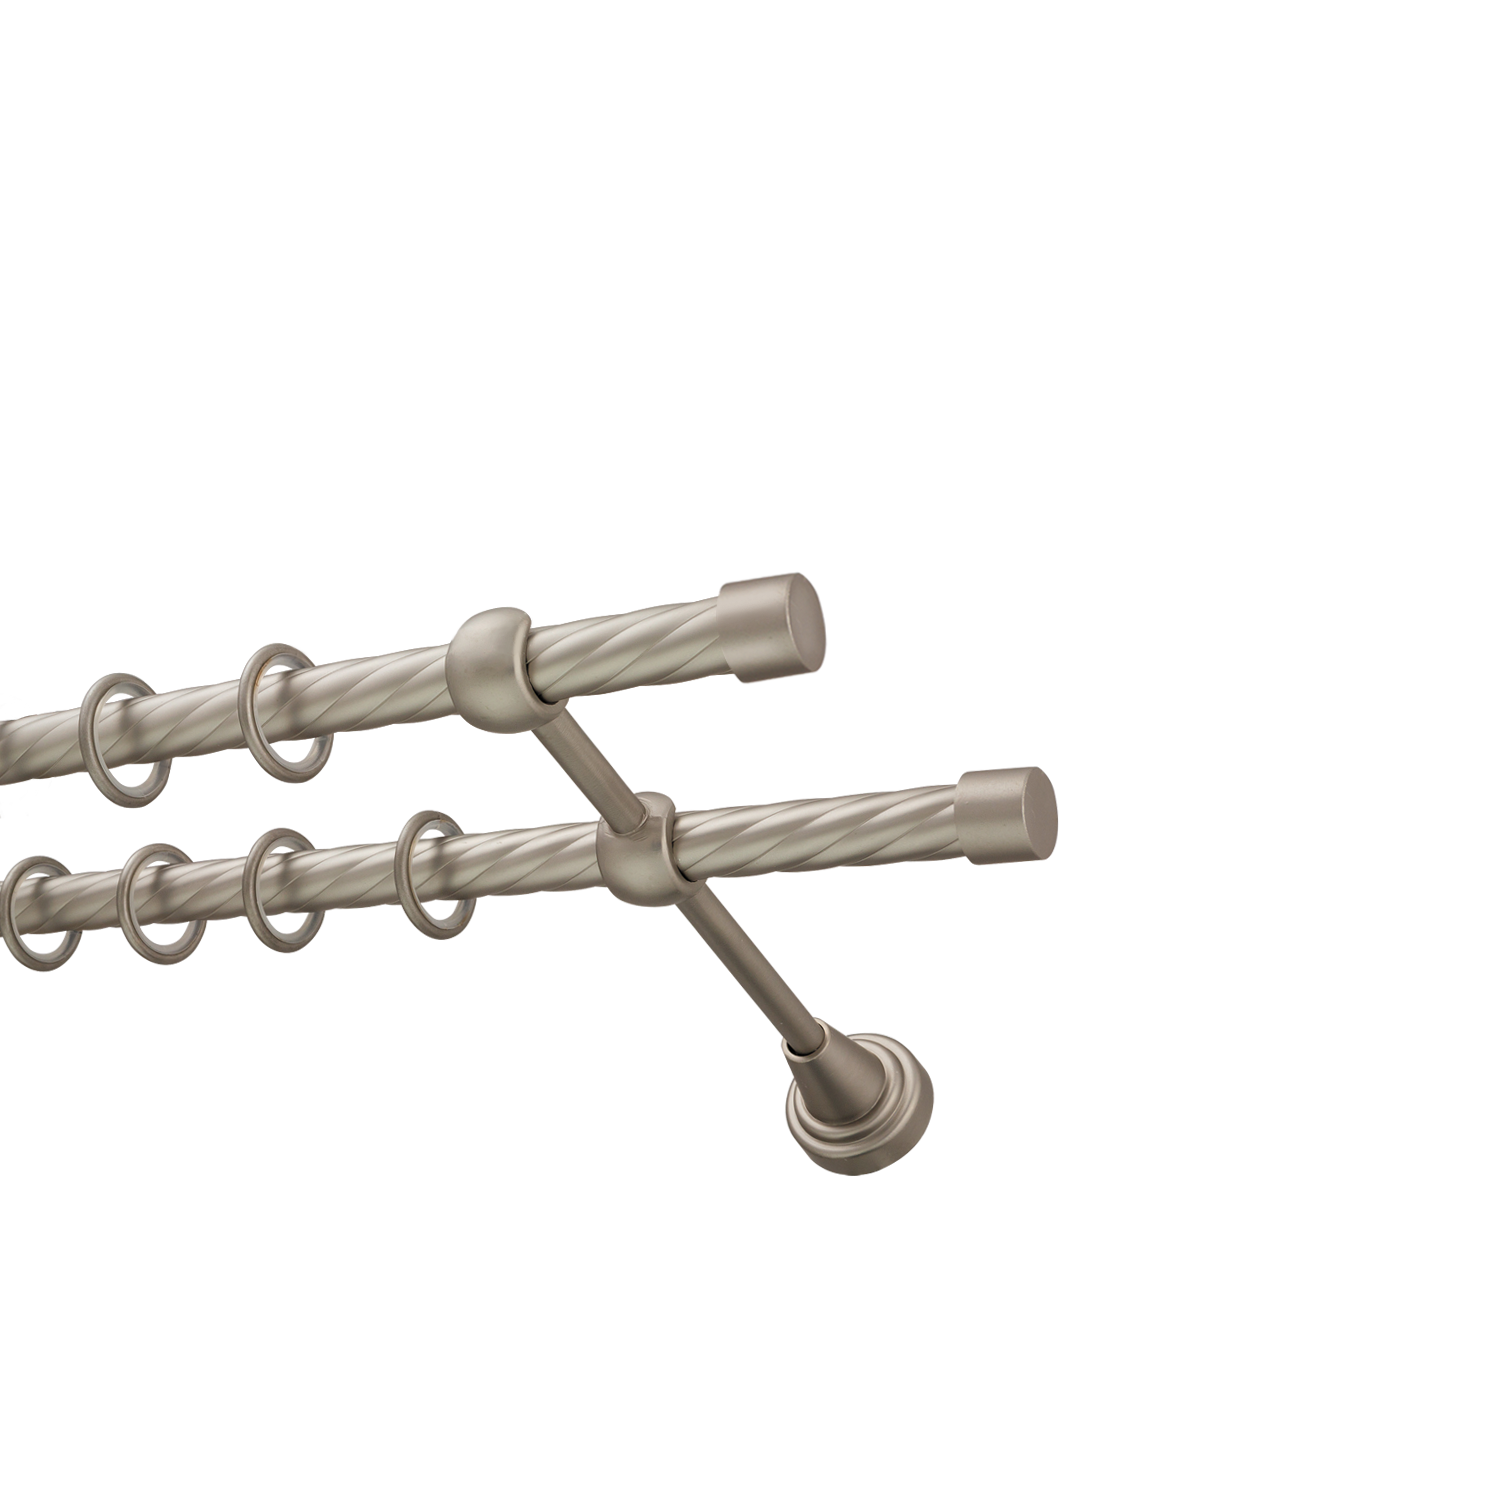 Металлический карниз для штор Заглушка, двухрядный 16/16 мм, сталь, витая штанга, длина 240 см - фото Wikidecor.ru